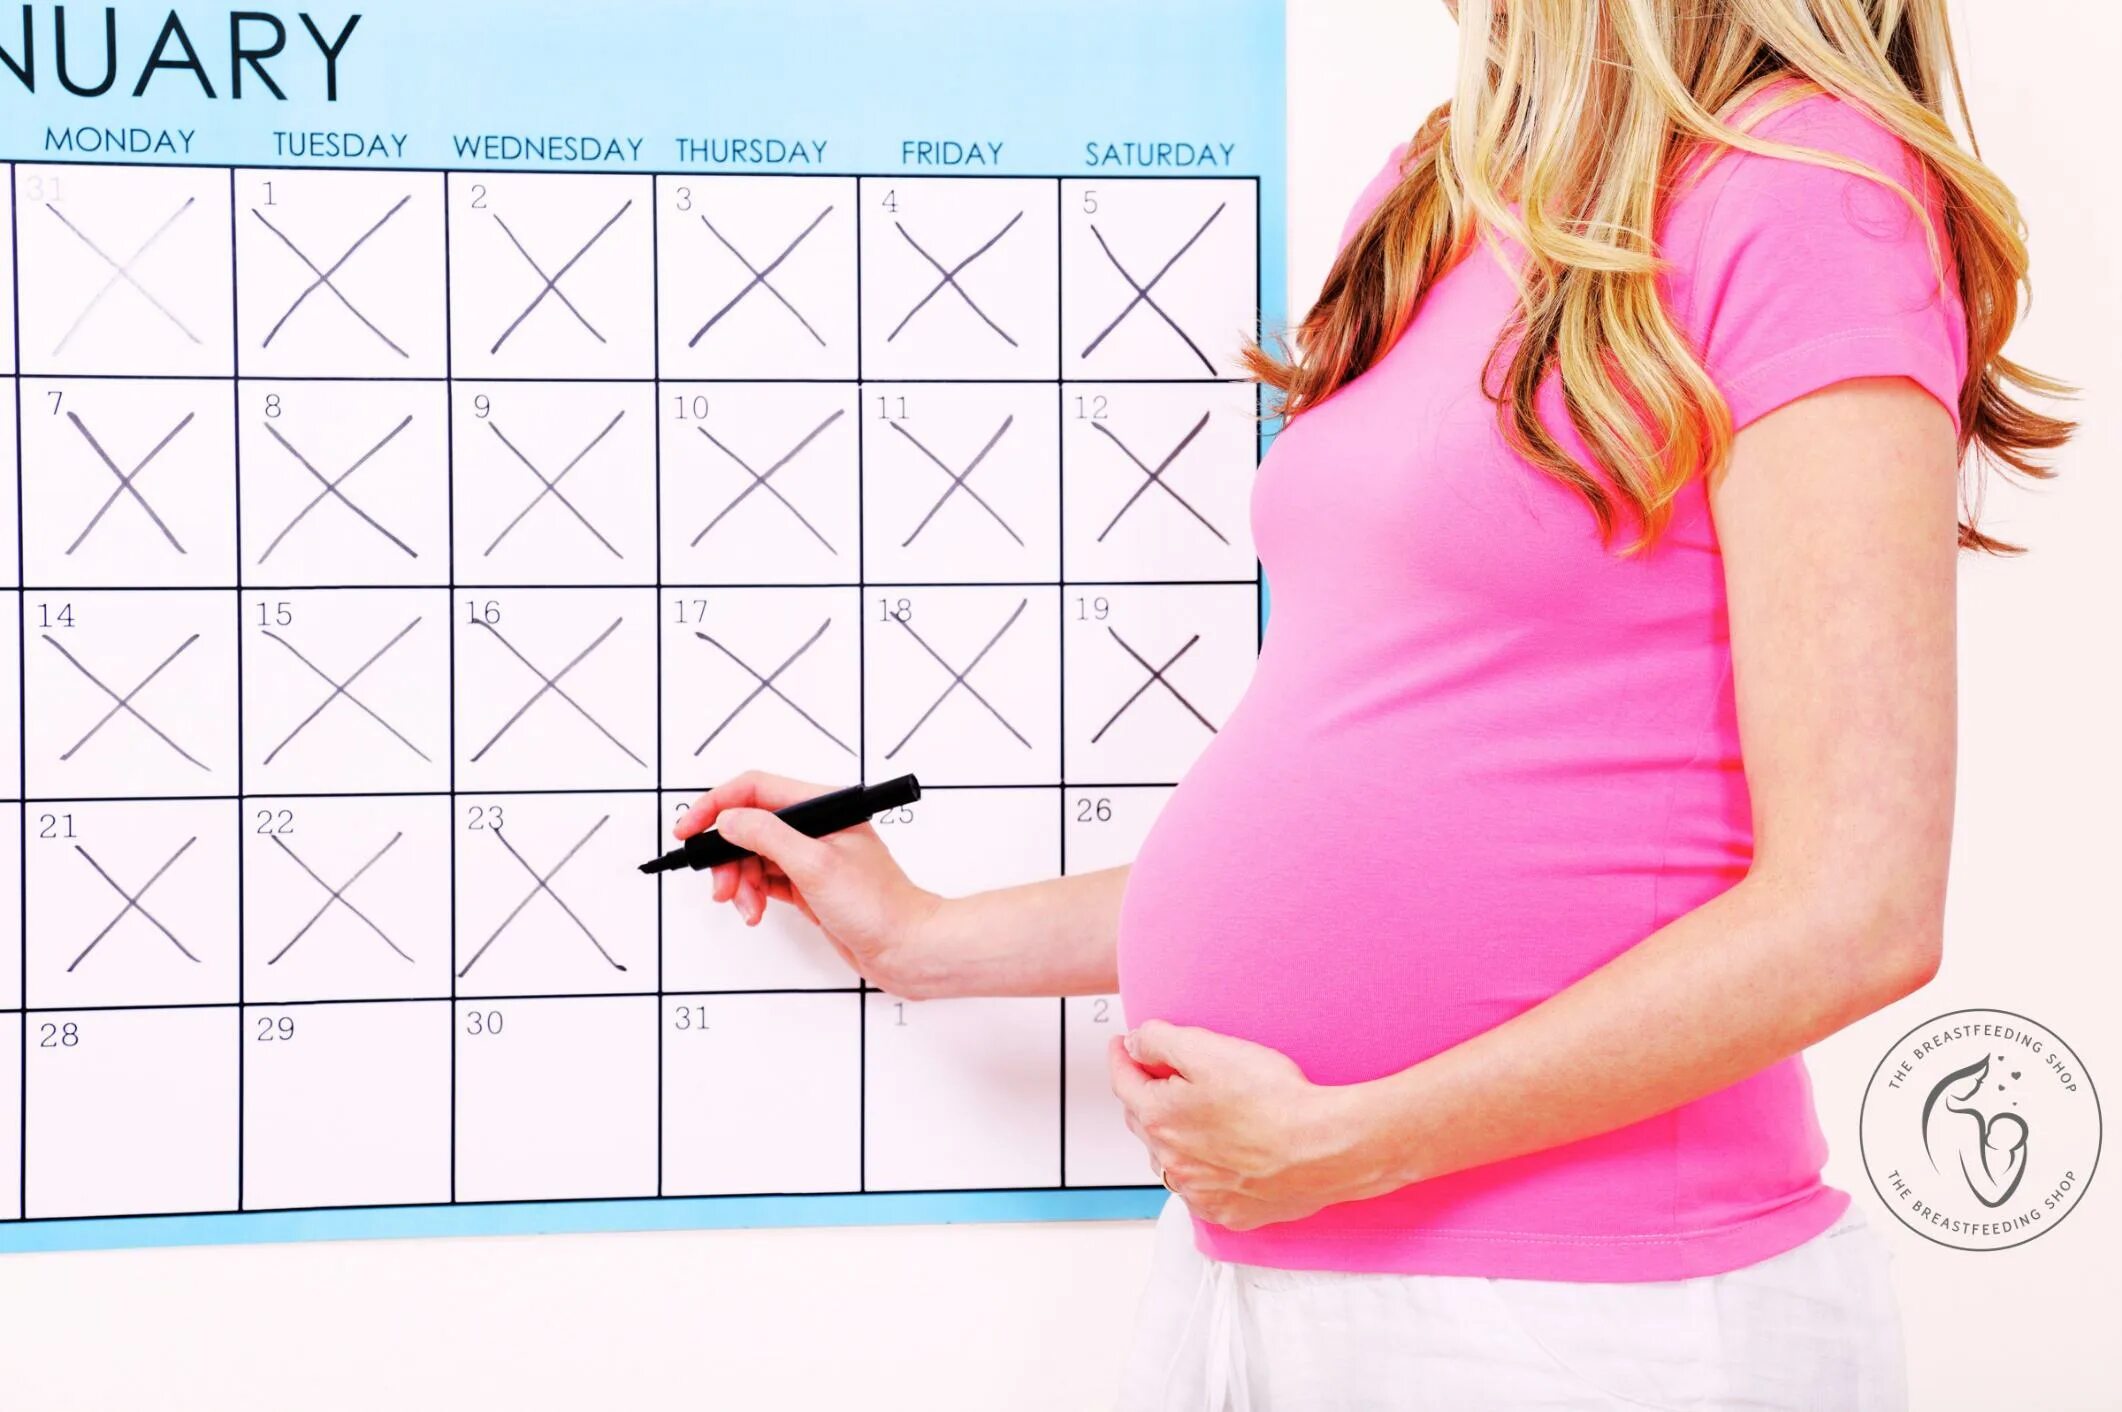 Калькулятор после беременности. Срок беременности. Календарь беременной. Акушерский калькулятор беременности. Календарь для беременных рисунки.